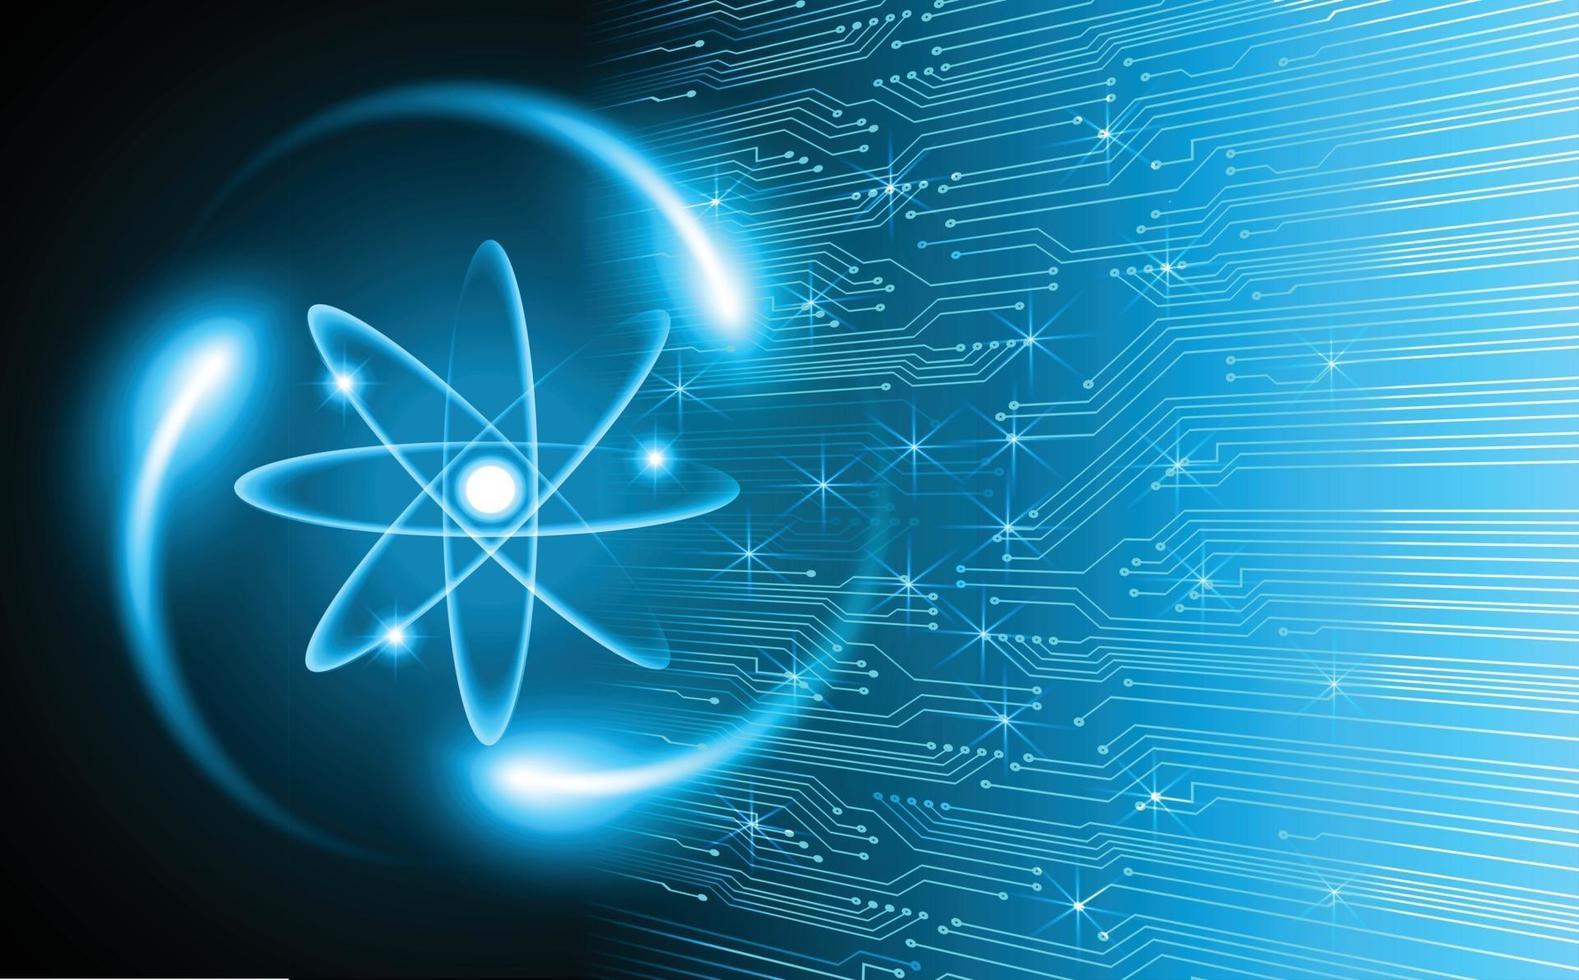 schéma d'atomes brillants bleu foncé. illustration. arrière-plan abstrait de la technologie pour l'infographie vecteur